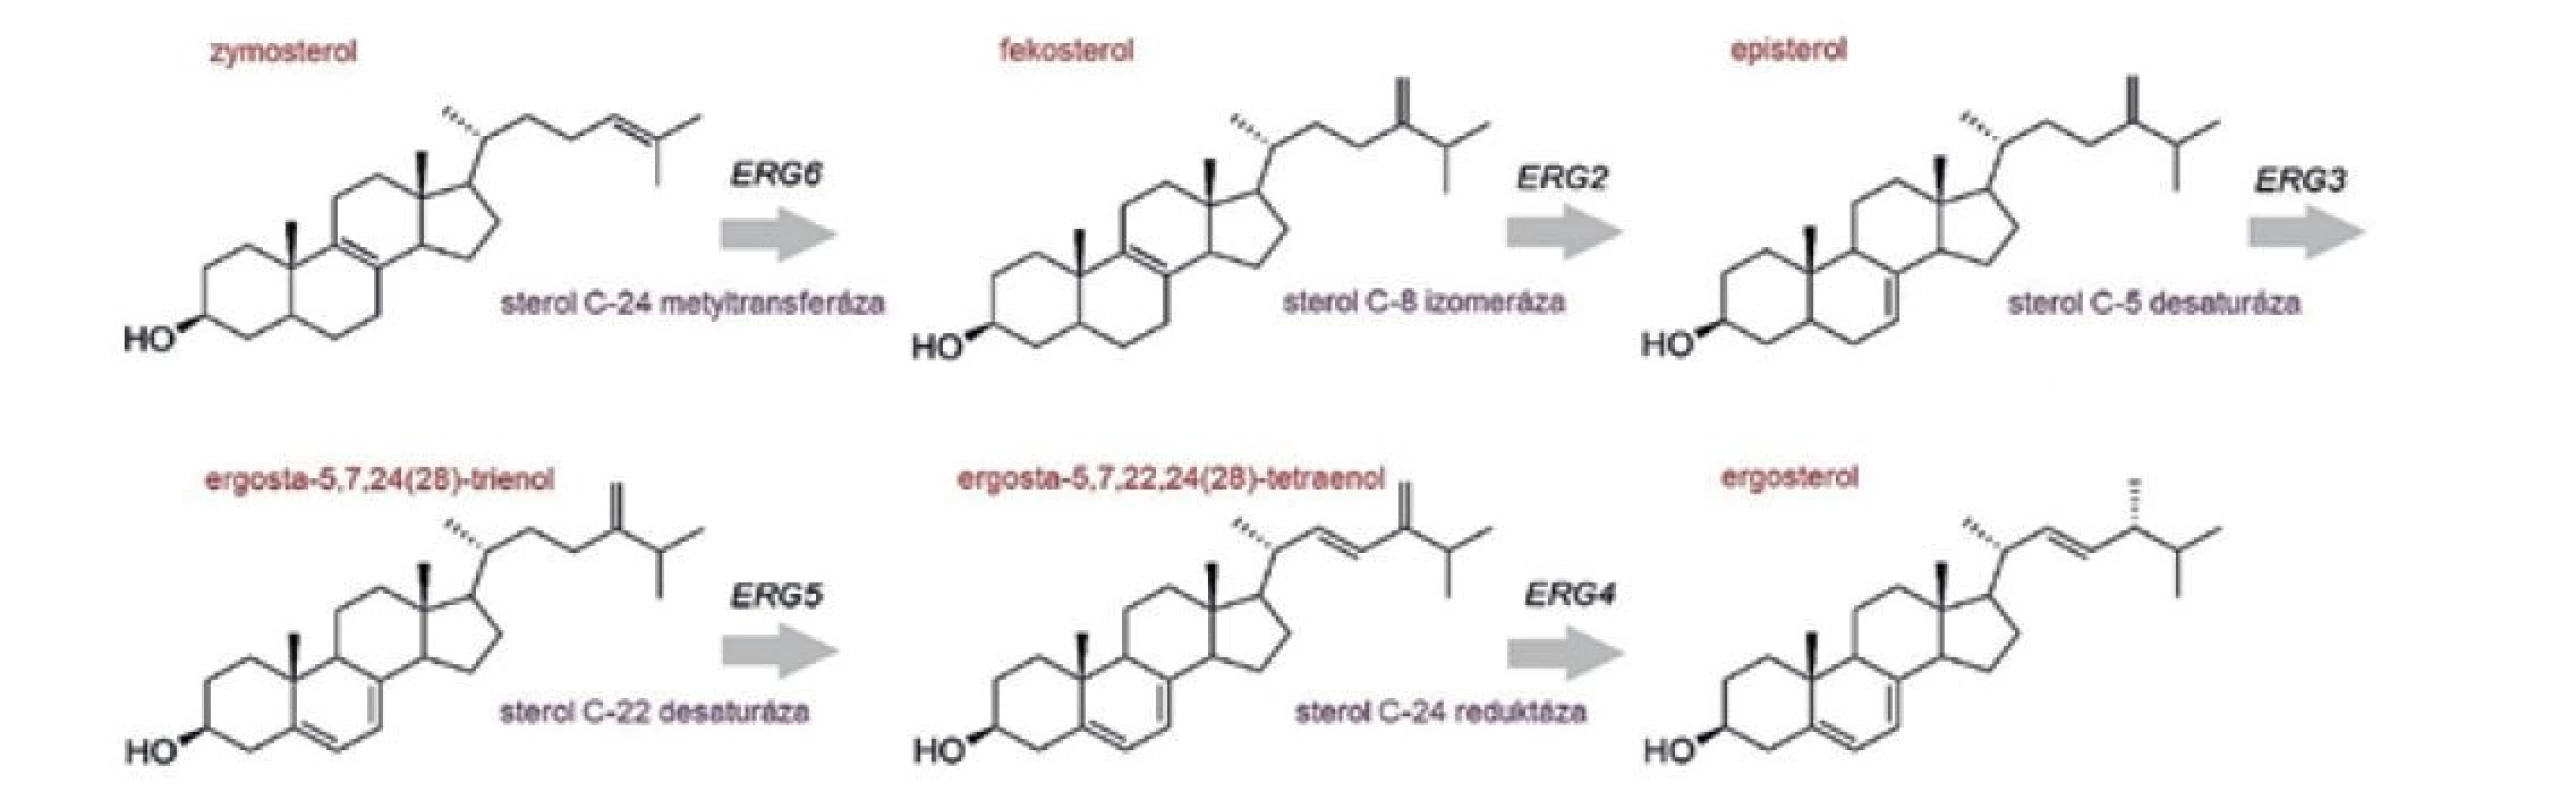 Záverečné kroky biosyntézy ergosterolu, katalyzované produktami neesenciálnych génov<br>
Figure 5. Final steps of ergosterol biosynthesis catalysed by products of non-essential genes